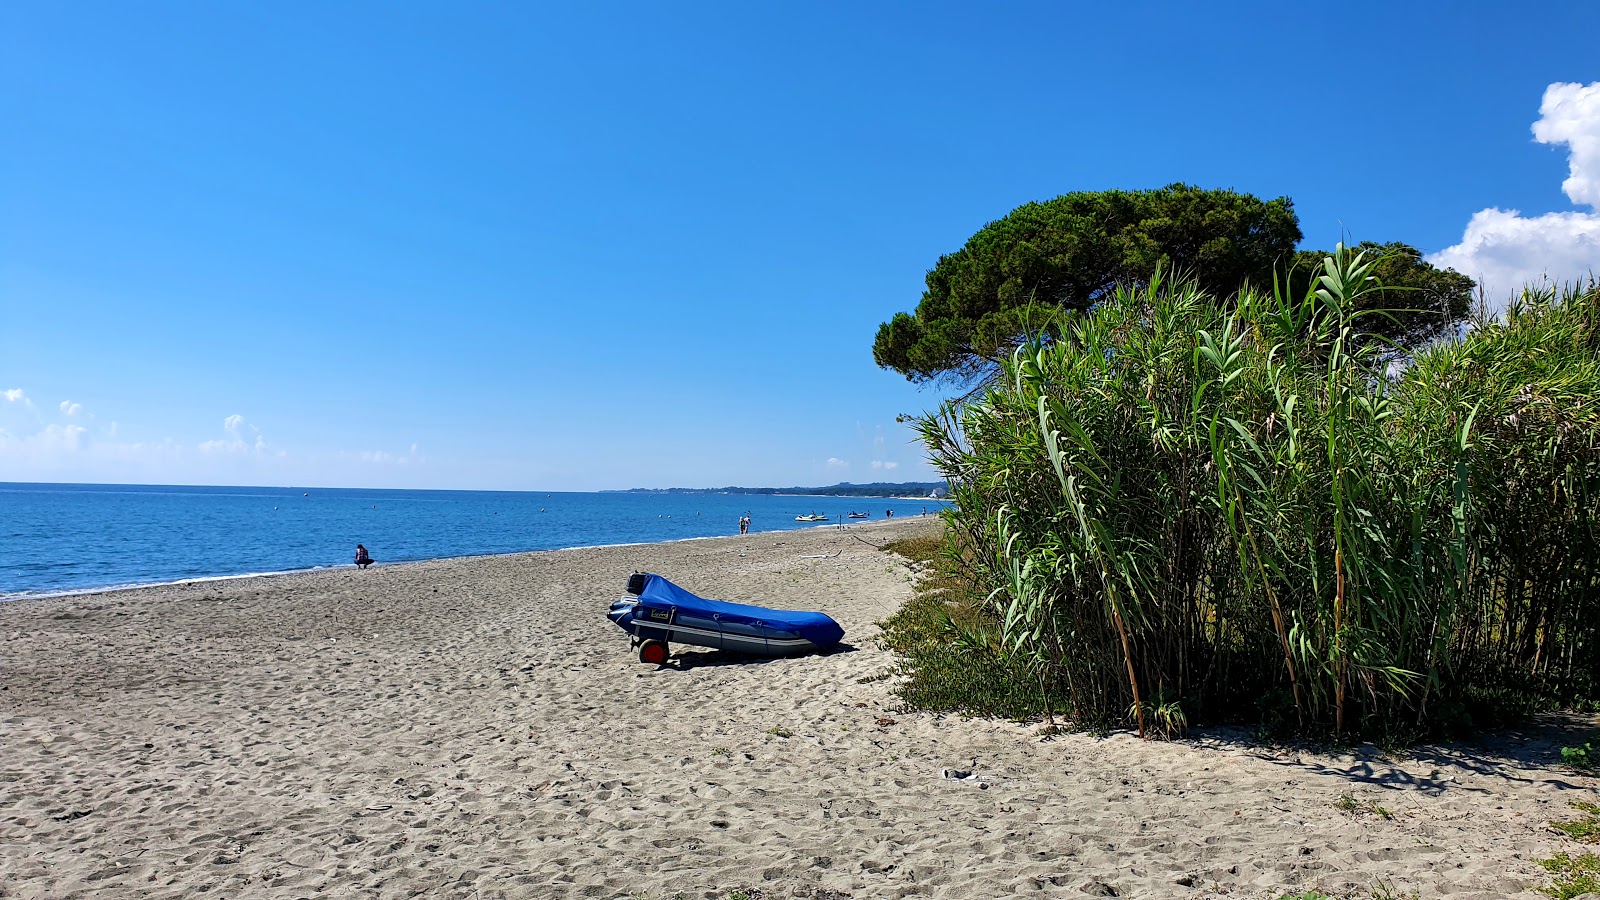 Foto de Ponticchio beach - lugar popular entre os apreciadores de relaxamento